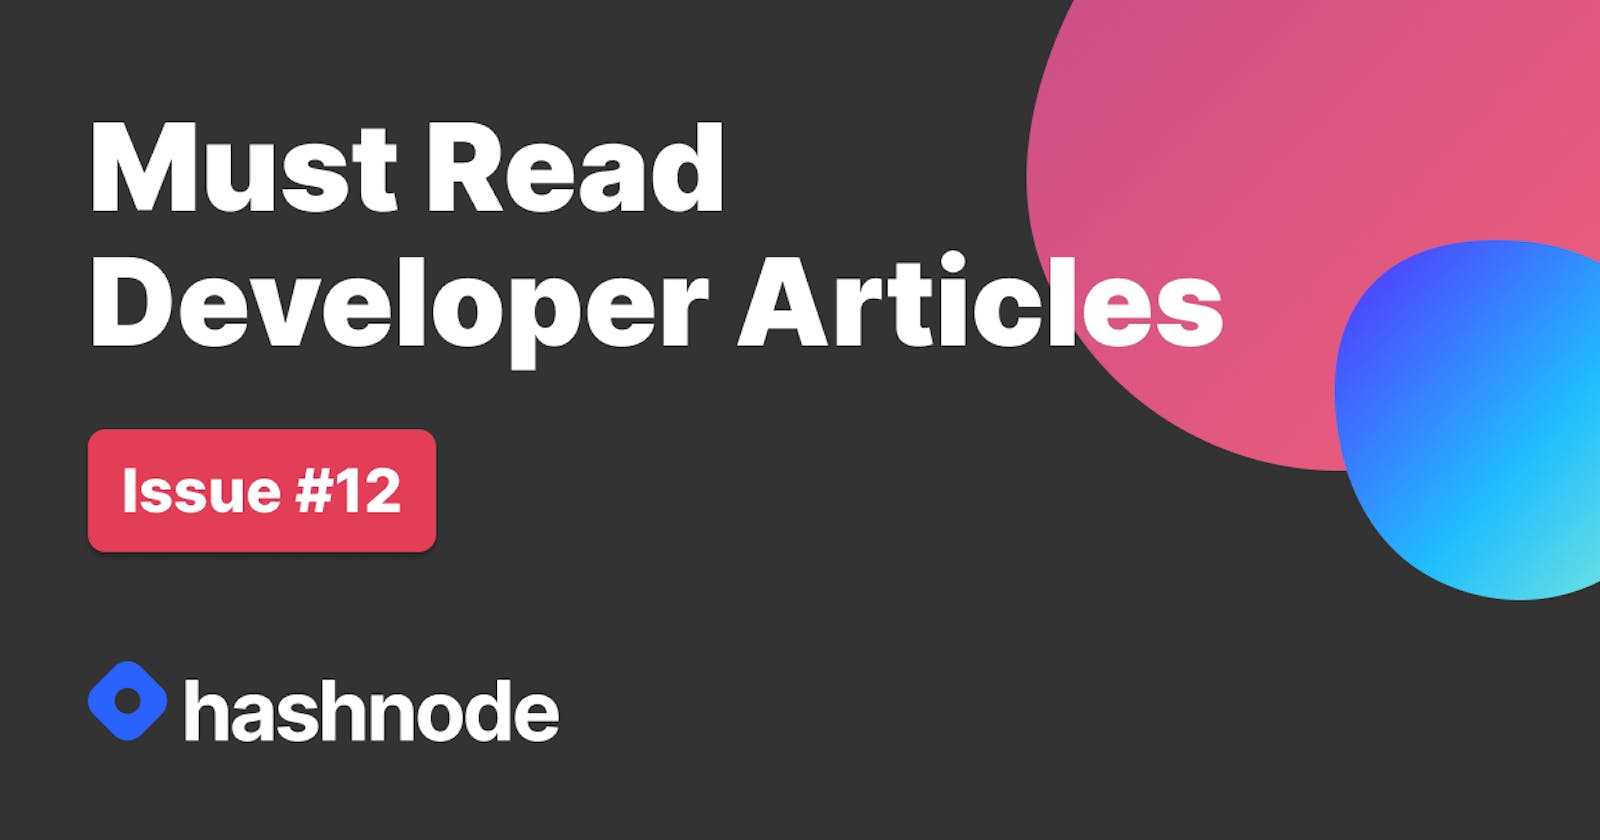 Must Read Developer Articles on Hashnode - #12